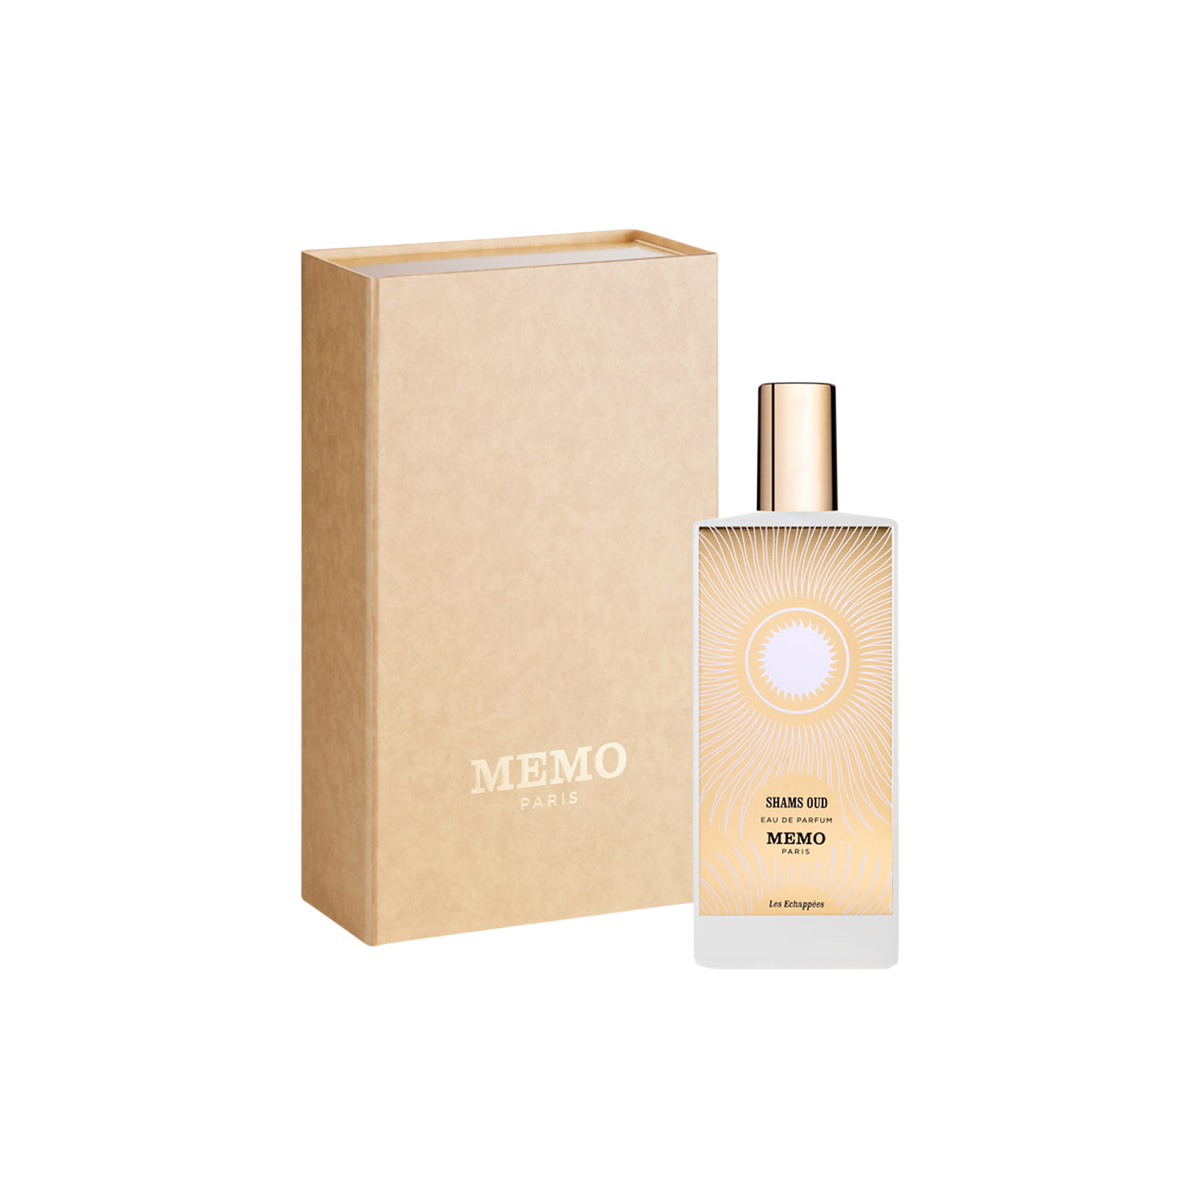 Memo Paris - Shams Oud Eau de Parfum